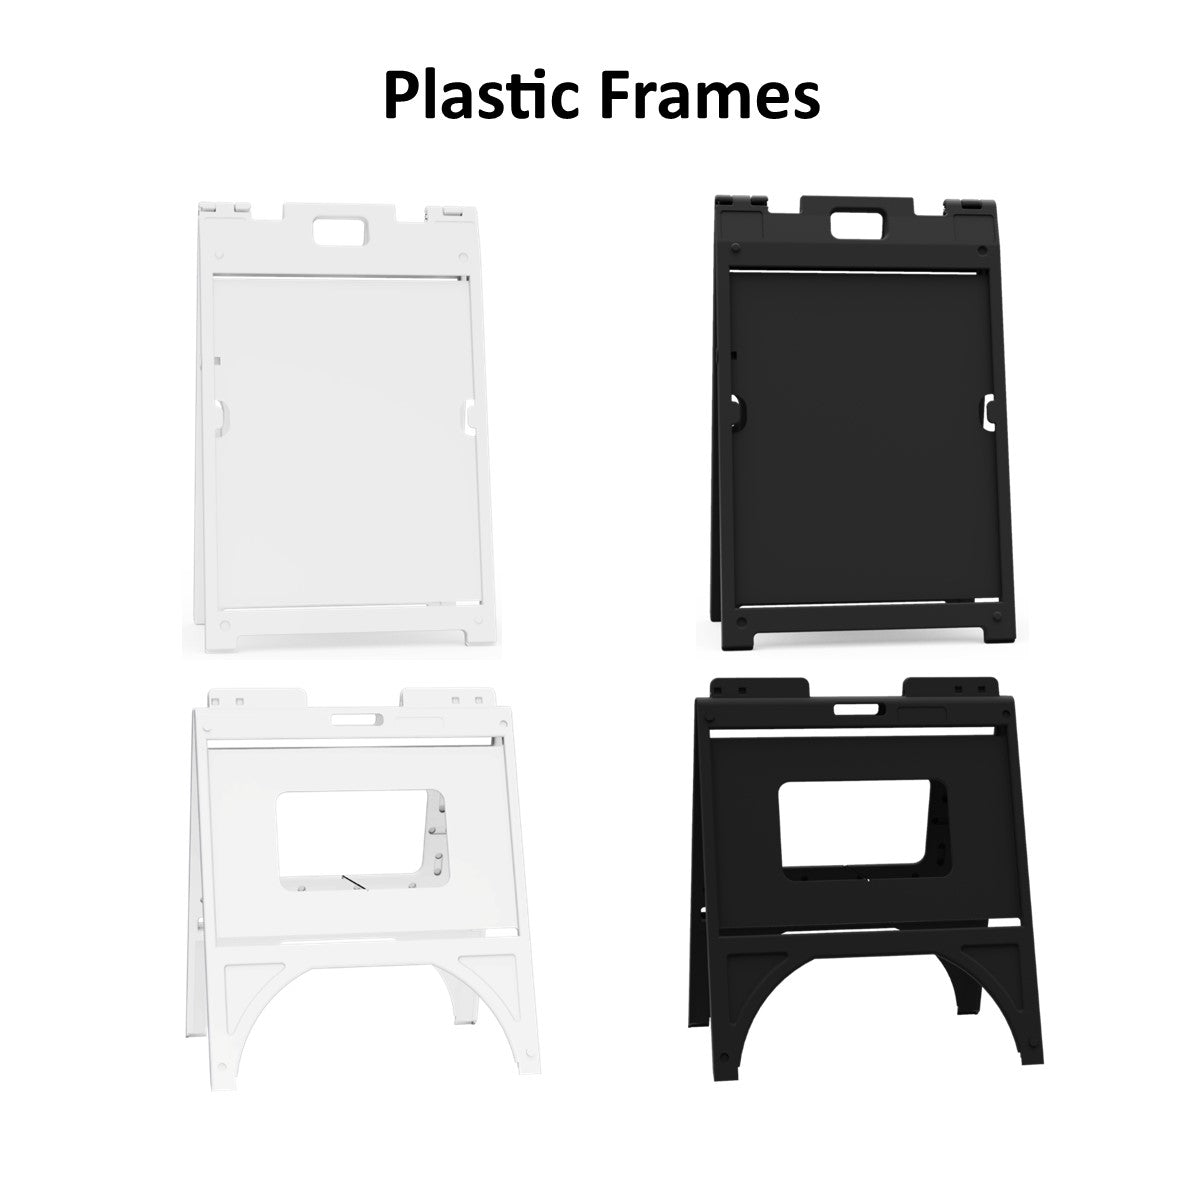 Plastic Frames